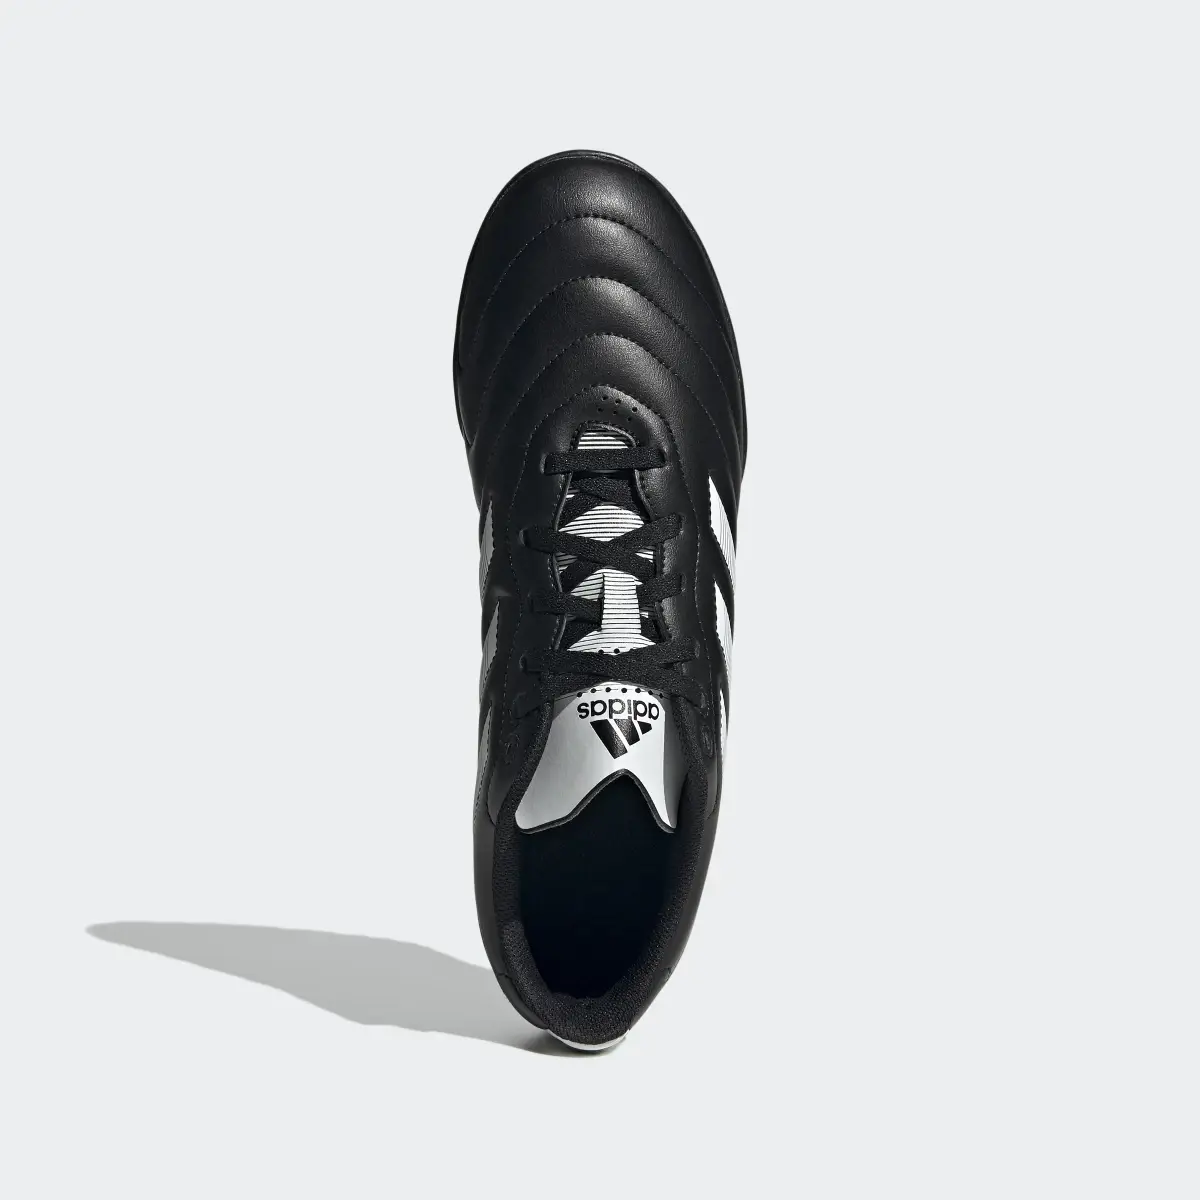 Adidas Botas de Futebol Goletto VIII – Piso sintético. 3